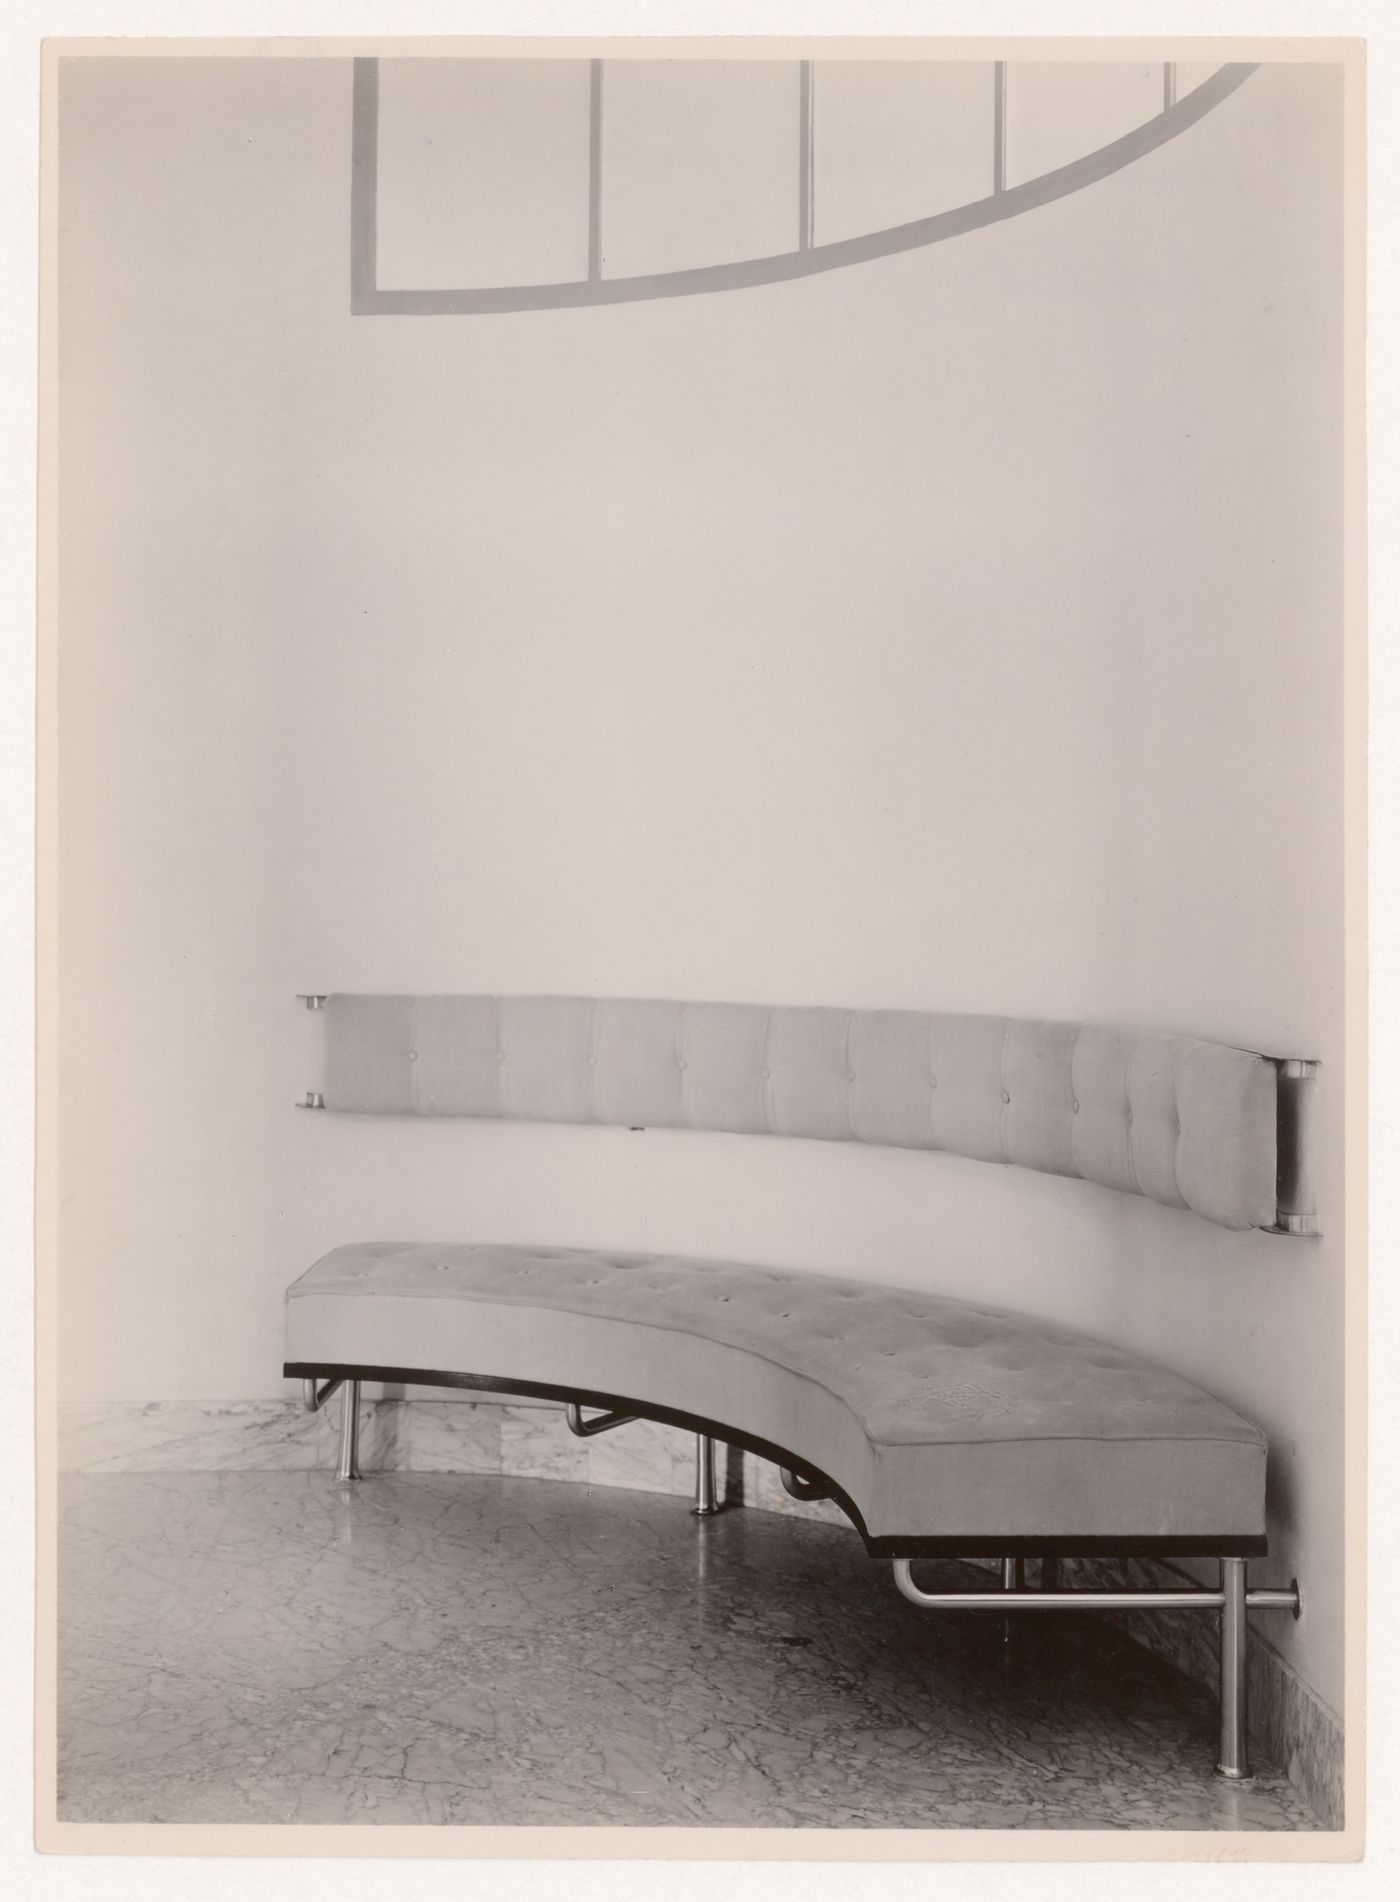 Interior view of Villa Allegonda showing the built-in hall bench designed by J.J.P. Oud, Katwijk aan Zee, Netherlands